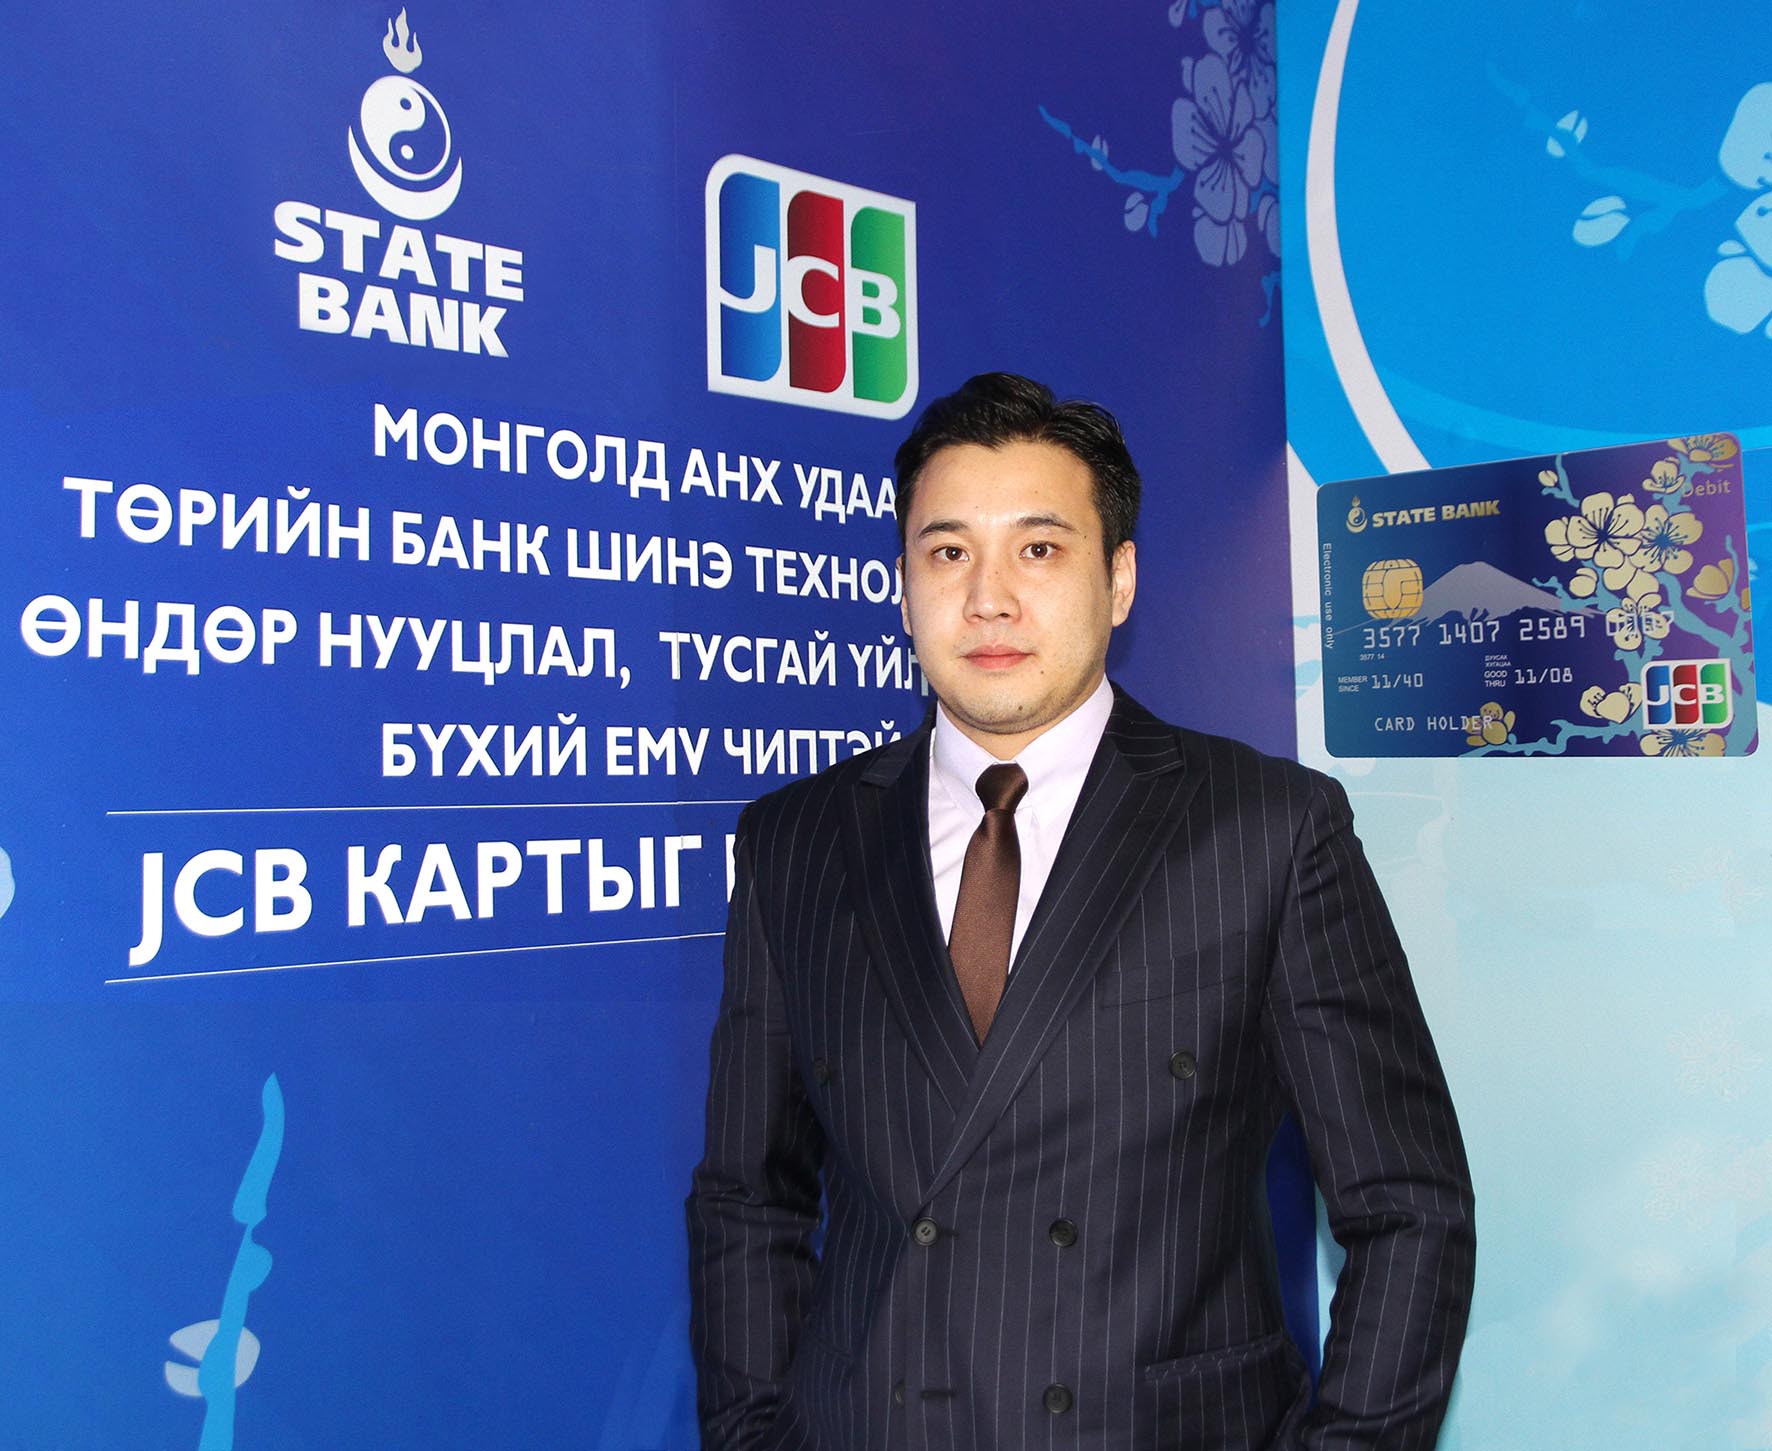 А.Мандахнаран: Монгол улс JCB картыг гүйлгээнд гаргаж буй 21 дэх орон боллоо